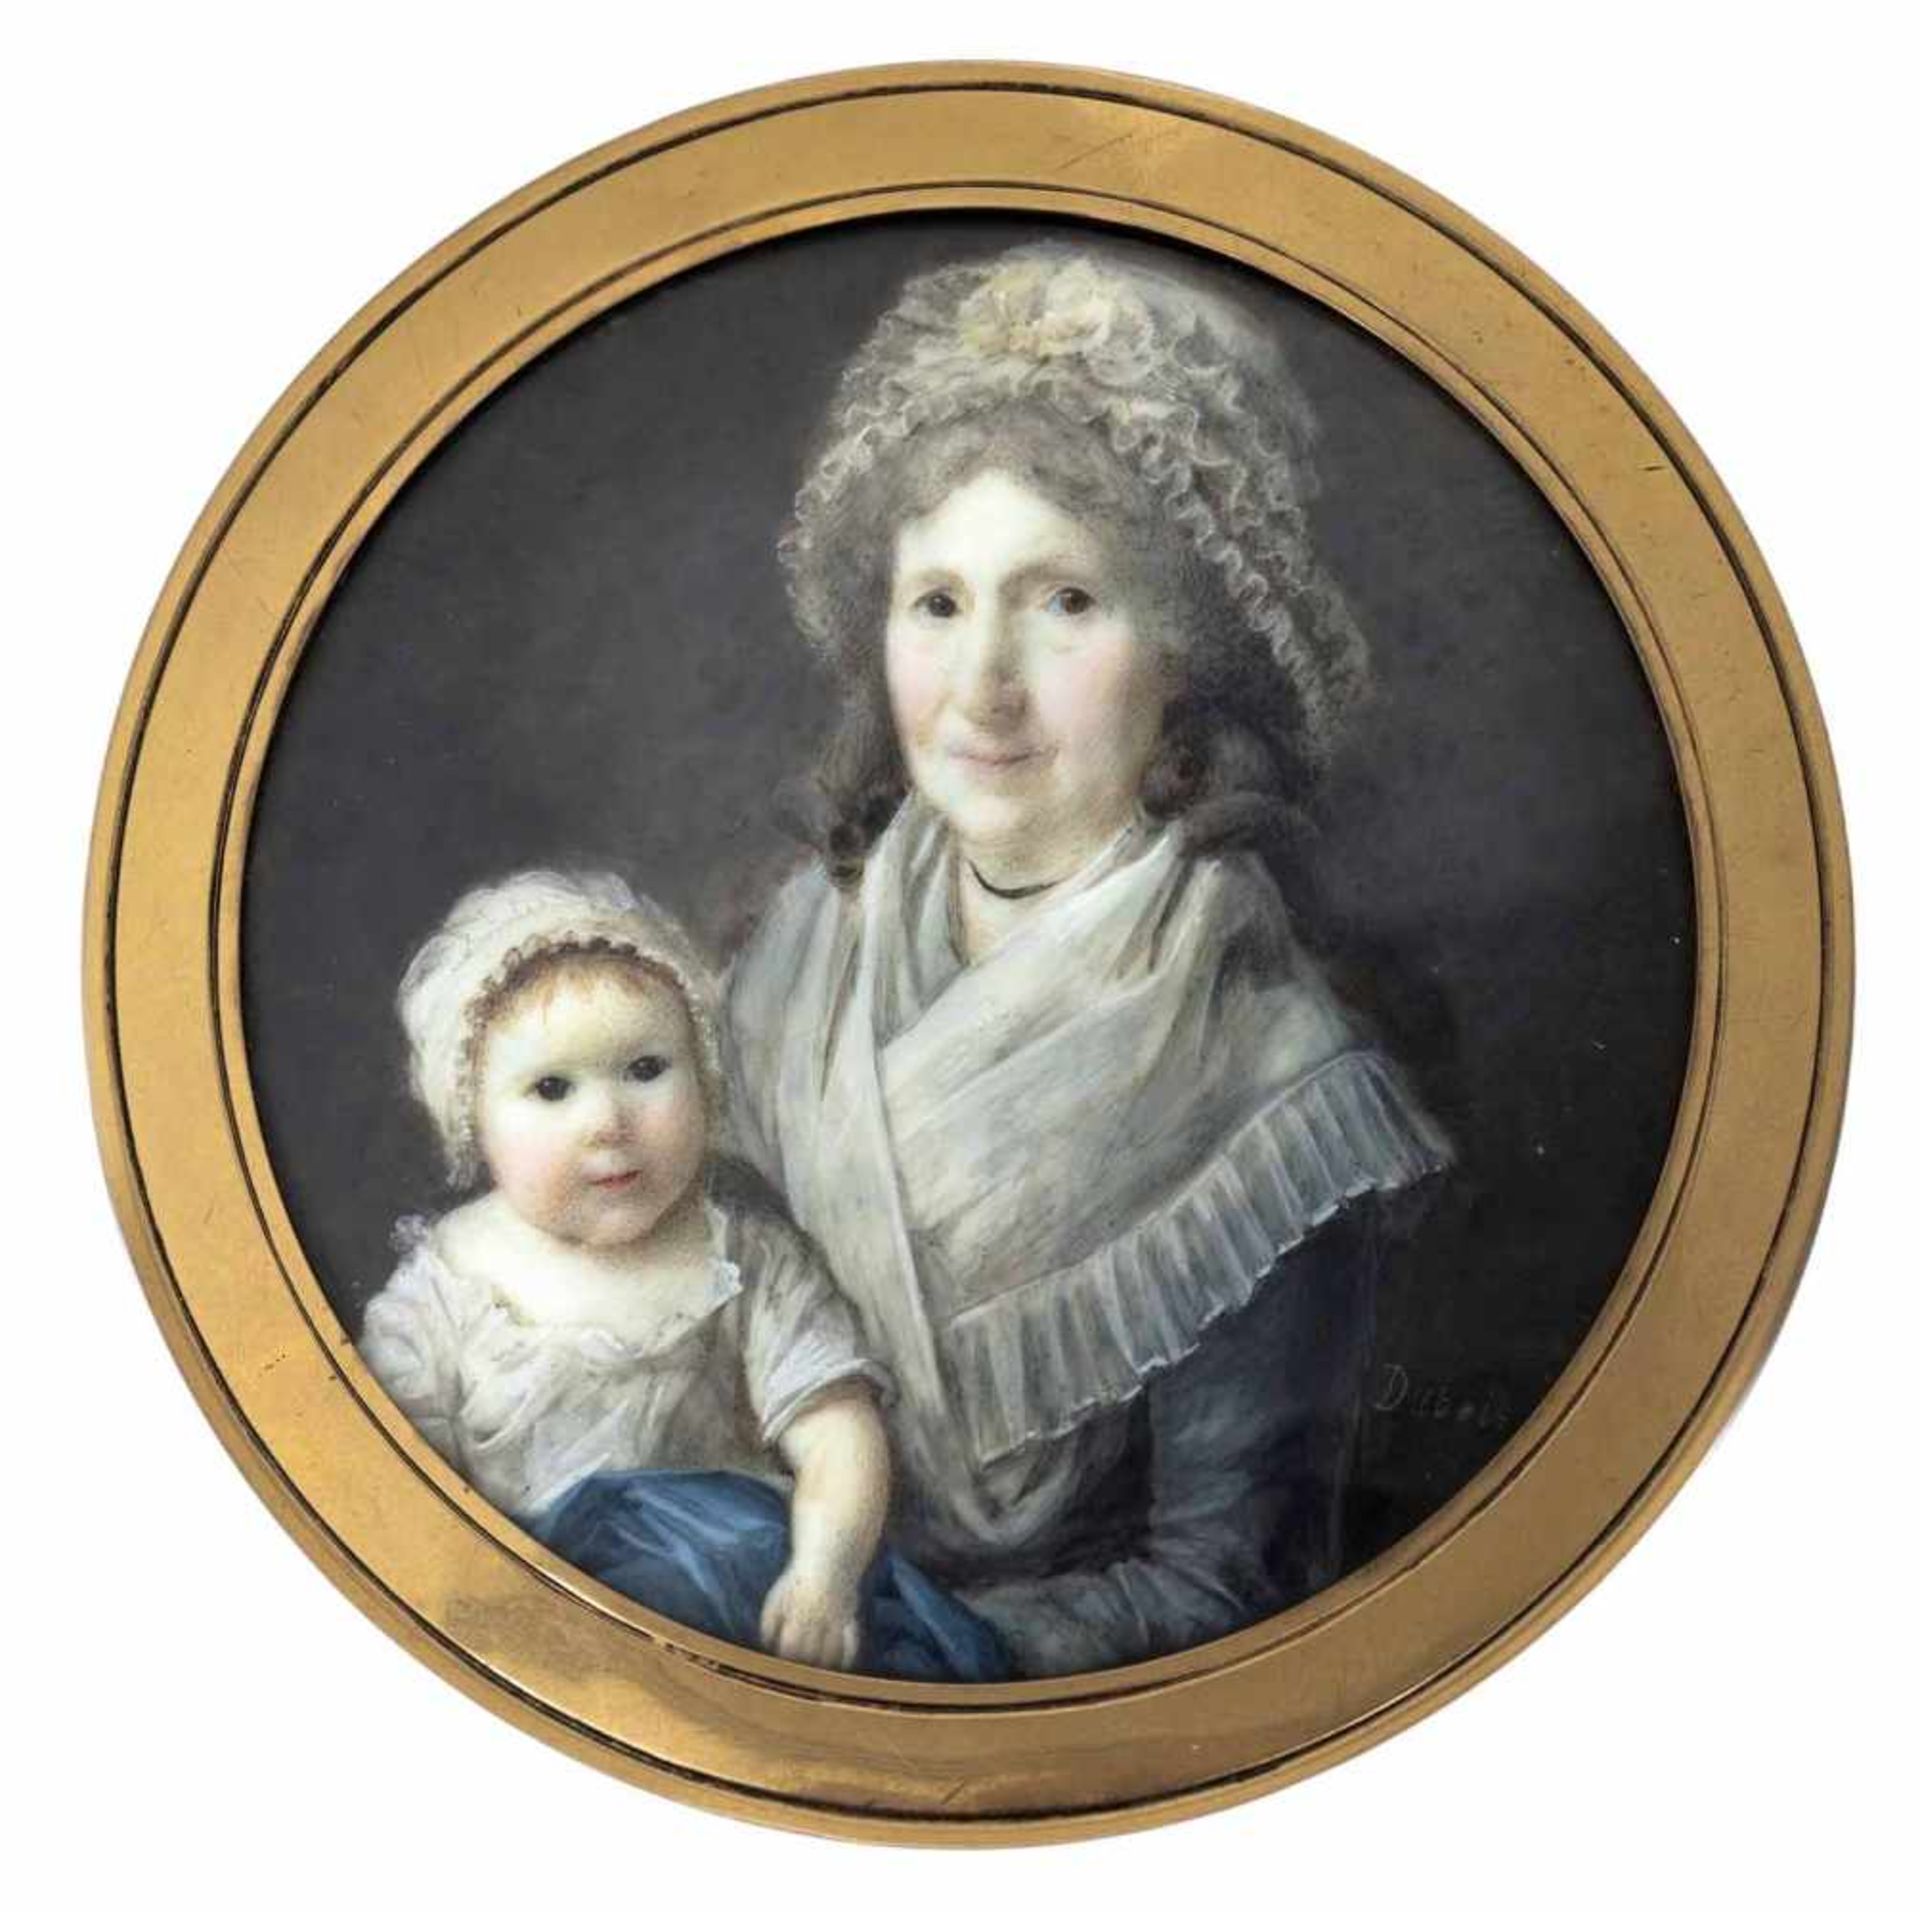 Dubois, FrédericFrankreich, tätig 1780-1819D. 6,1/7,5 cmGroßmutter und ihr Enkelkind. Die Dame mit